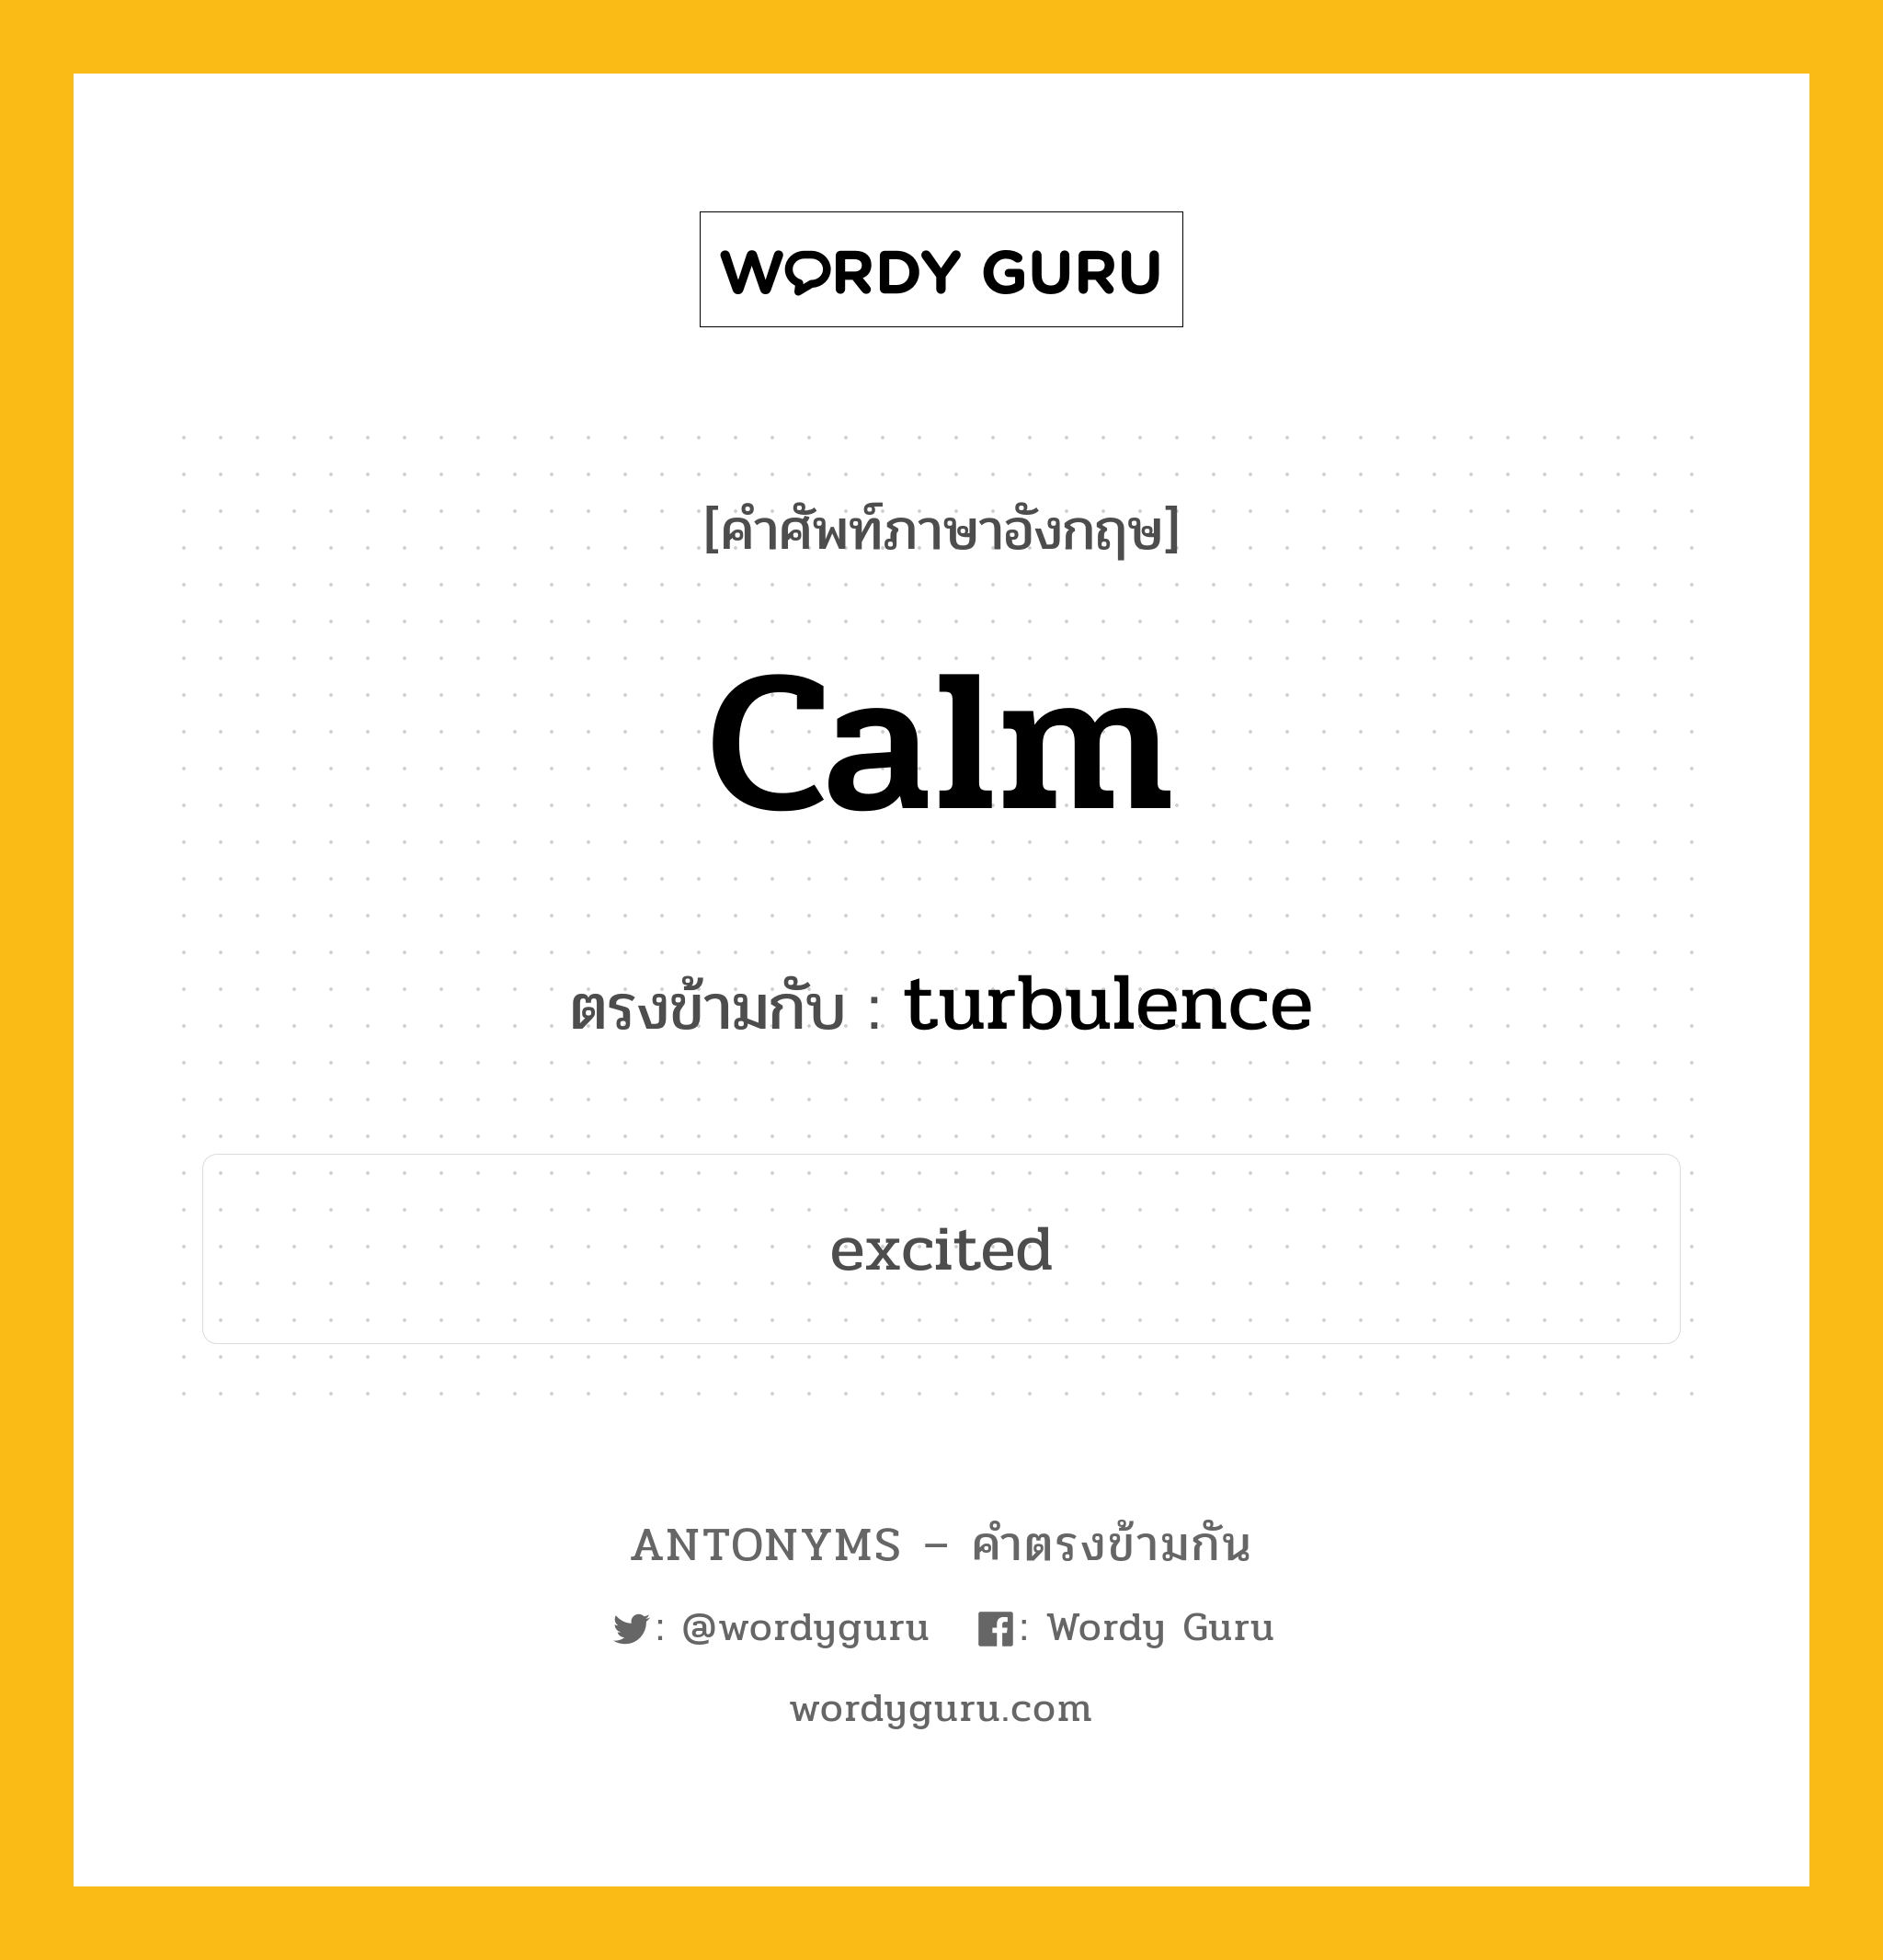 calm เป็นคำตรงข้ามกับคำไหนบ้าง?, คำศัพท์ภาษาอังกฤษ calm ตรงข้ามกับ turbulence หมวด turbulence